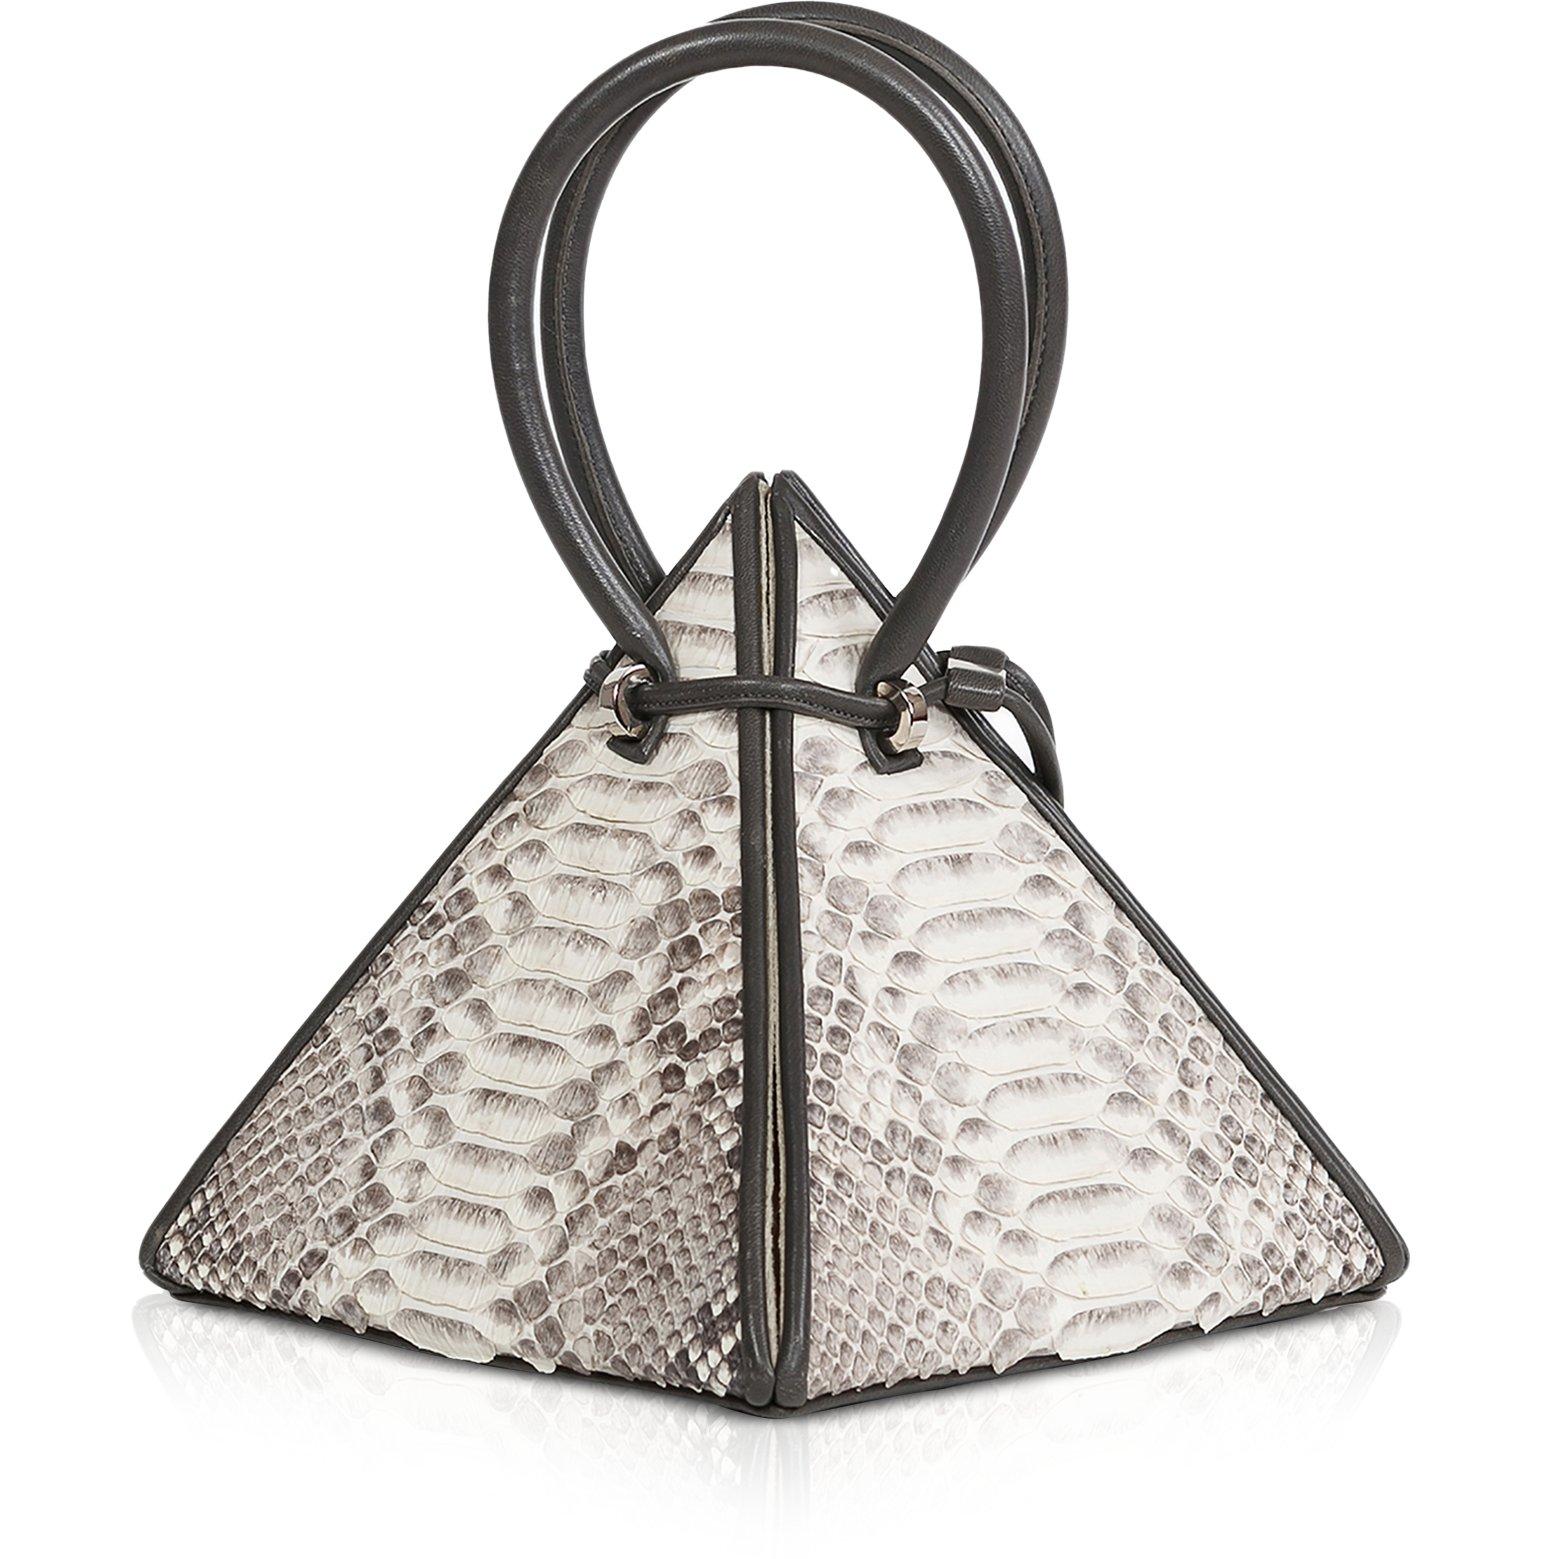 NITASURI Lia Pyramid Burgundy Iconic Leather Handbag